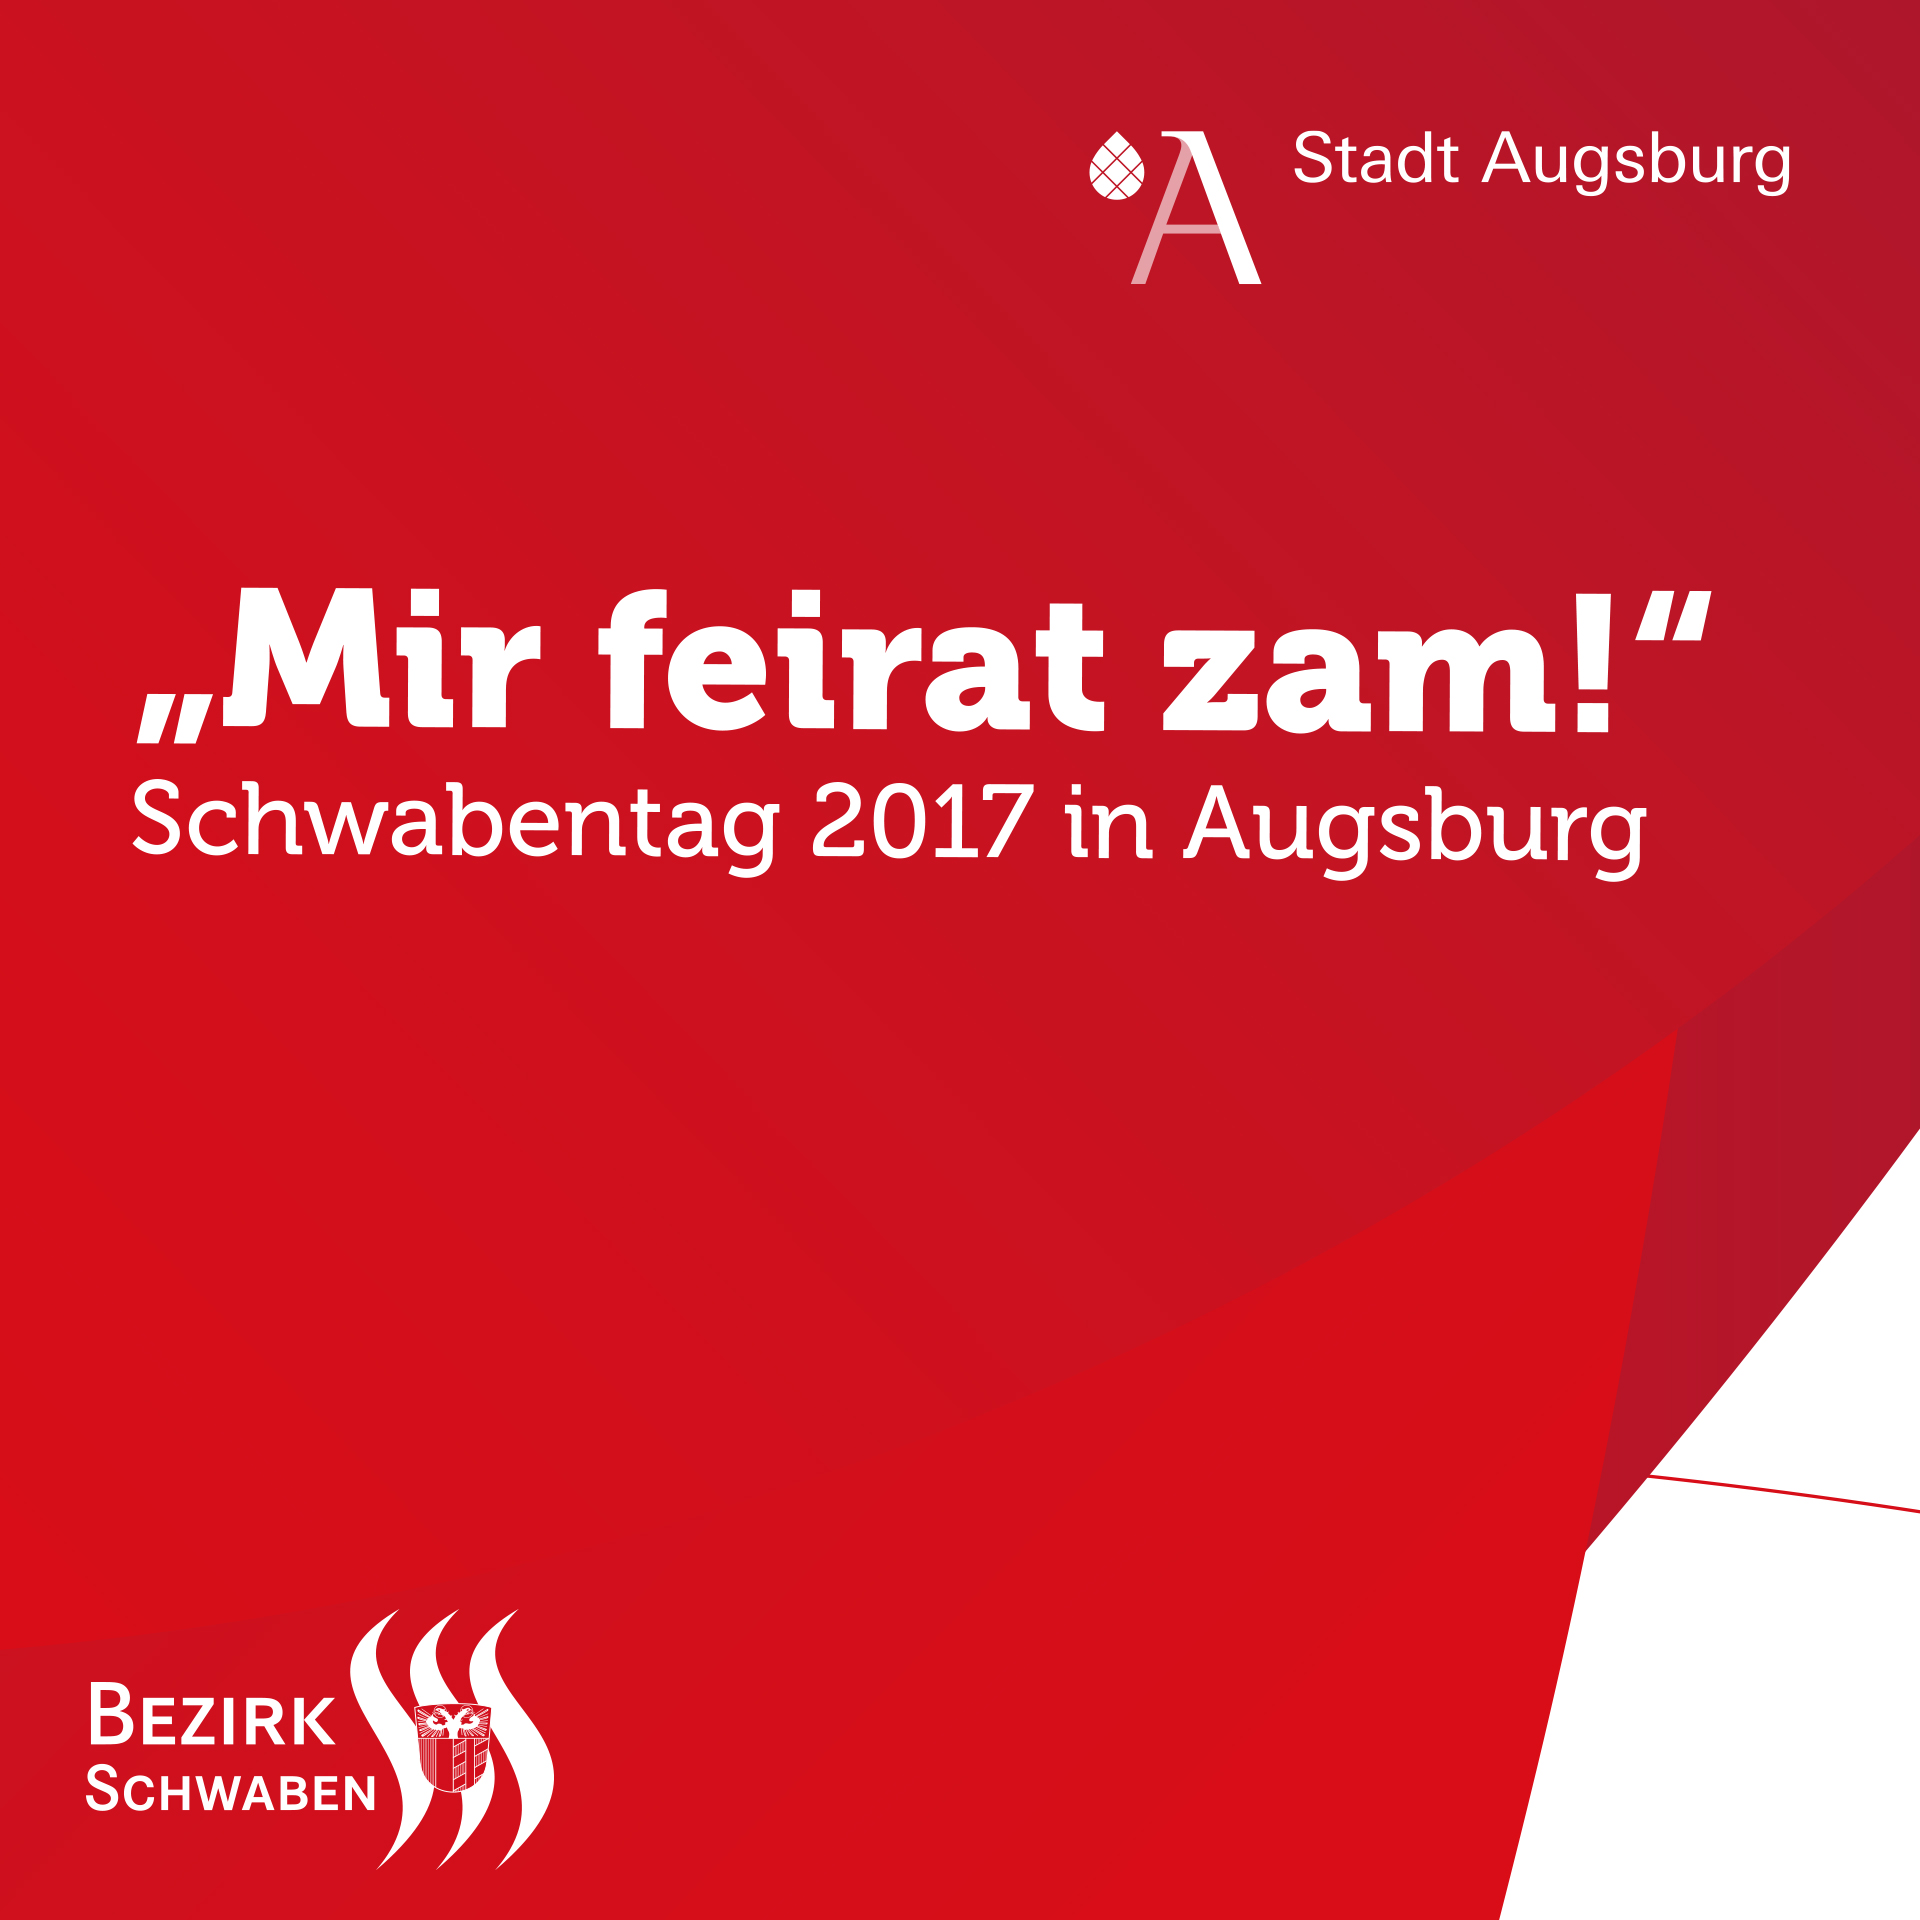 "Mir feirat zam!": Schwabentag 2017 in Augsburg